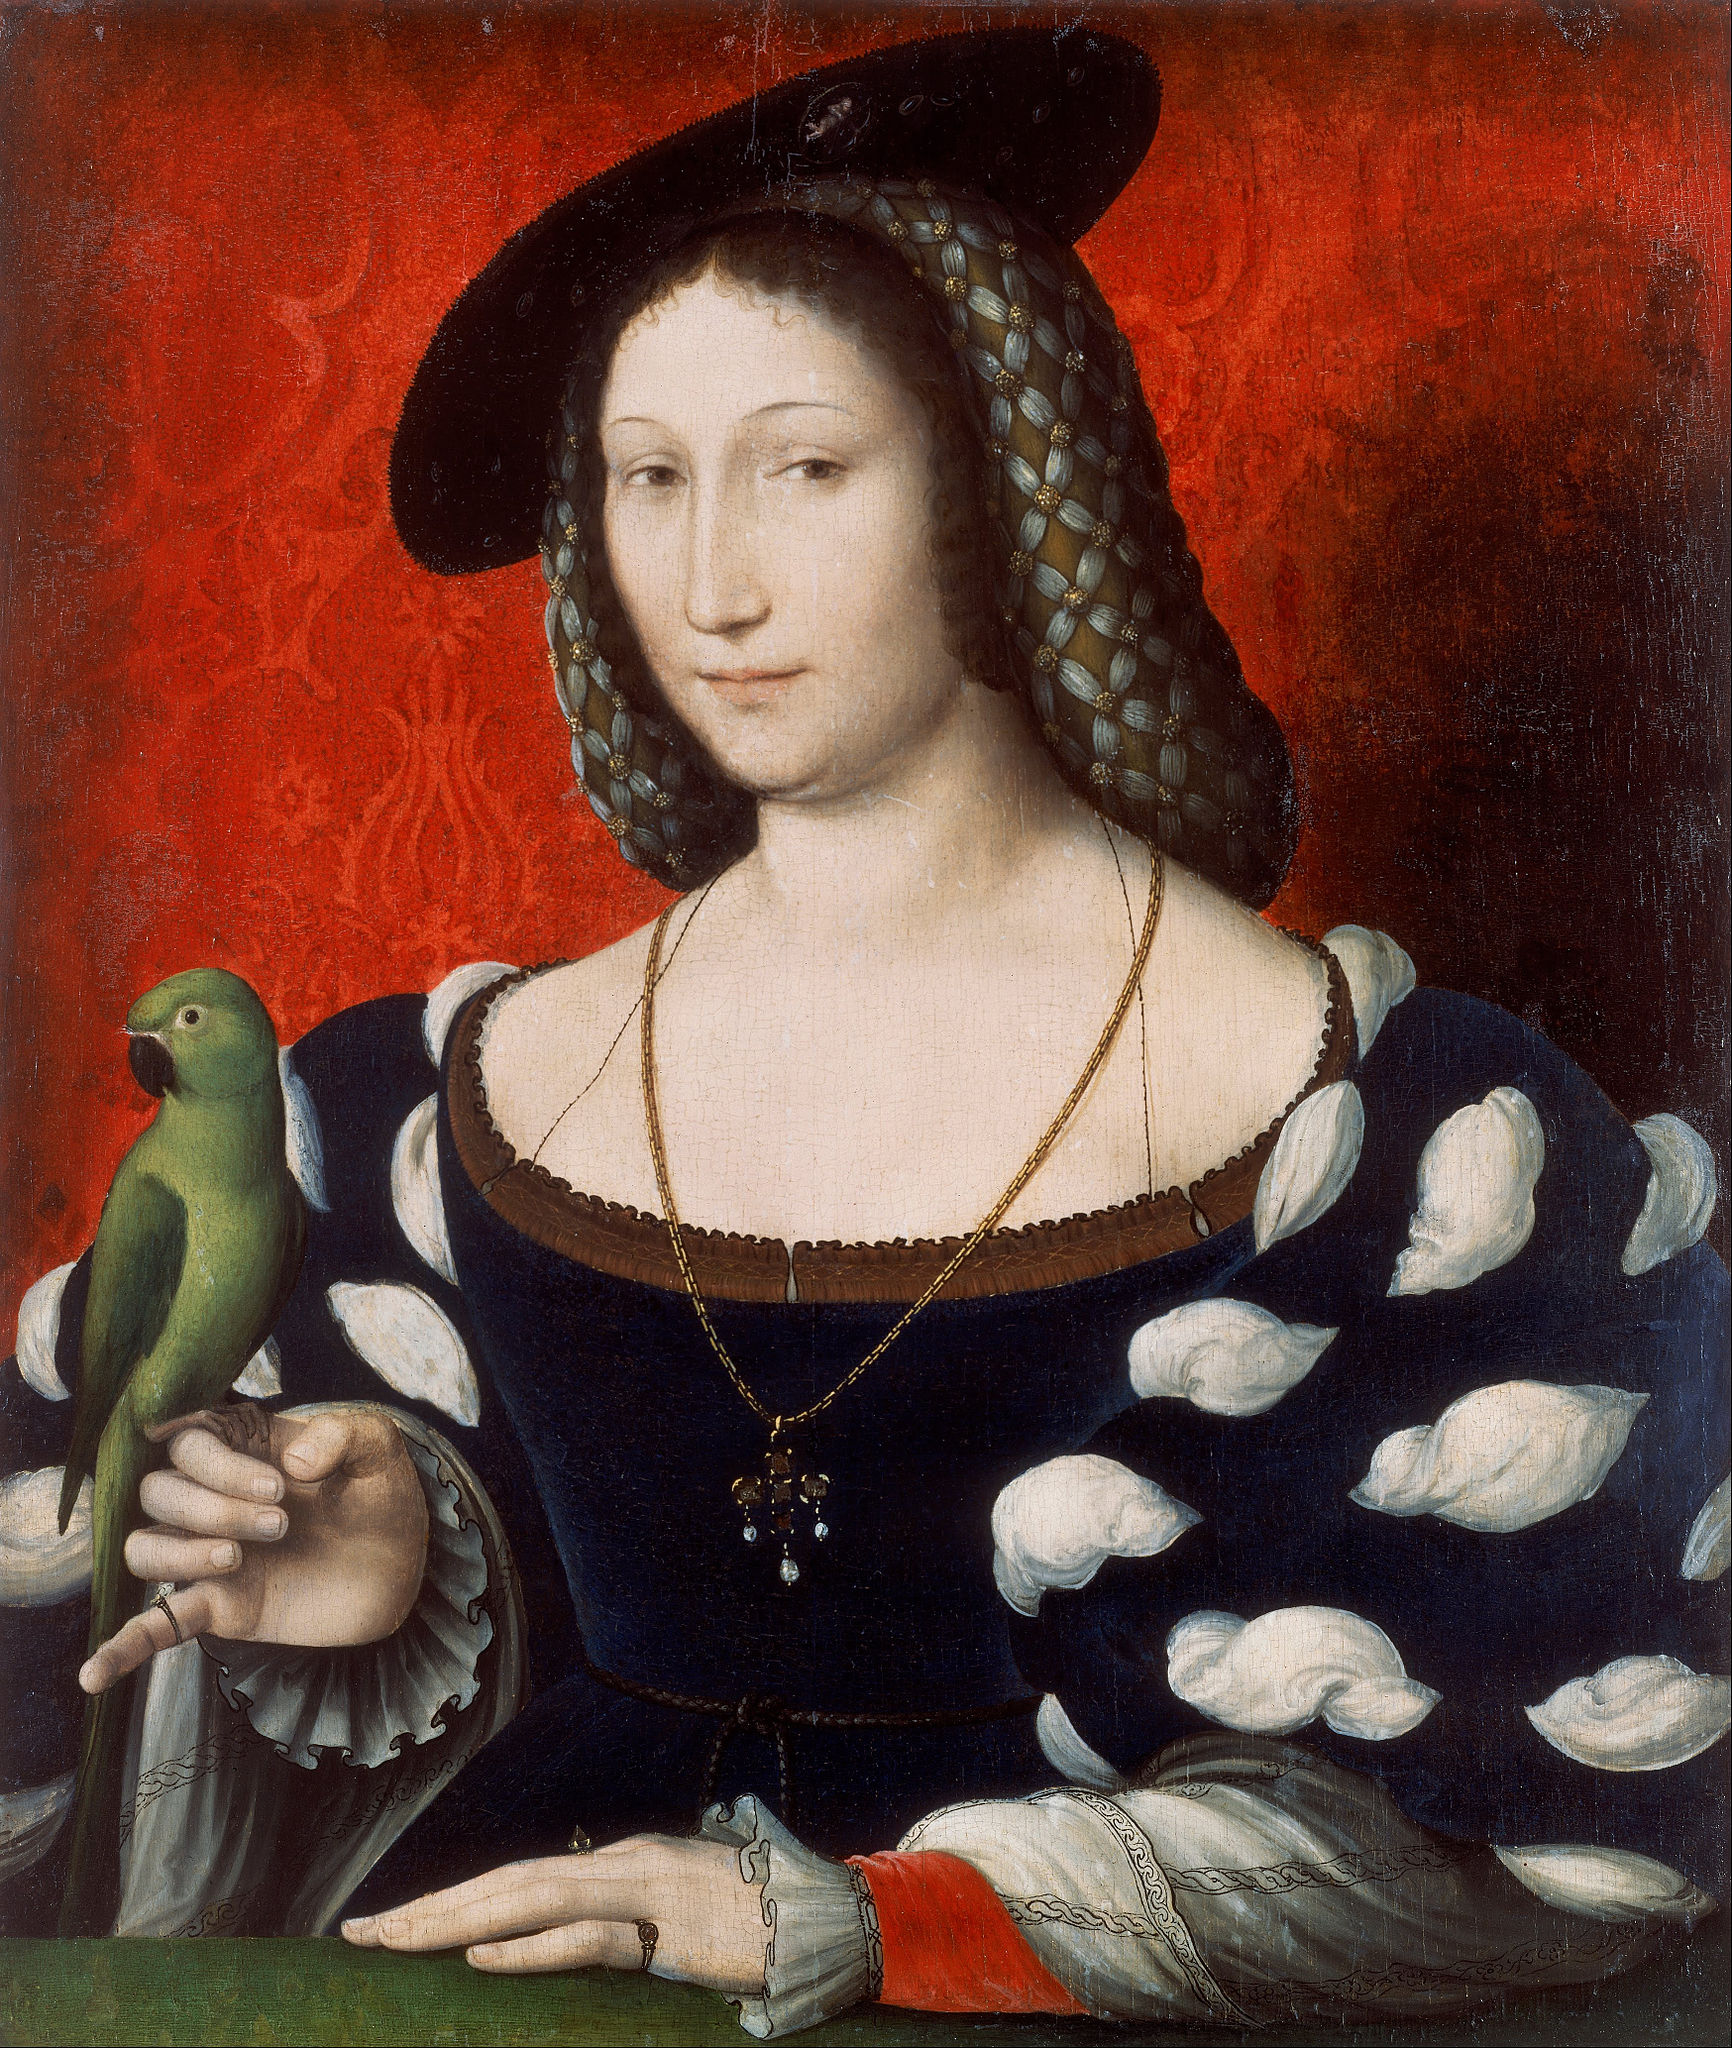 Portrait of Marguerite of Navarre by Jean Clouet - c. 1527 - 51.4 x 59.8 cm Walker Art Gallery